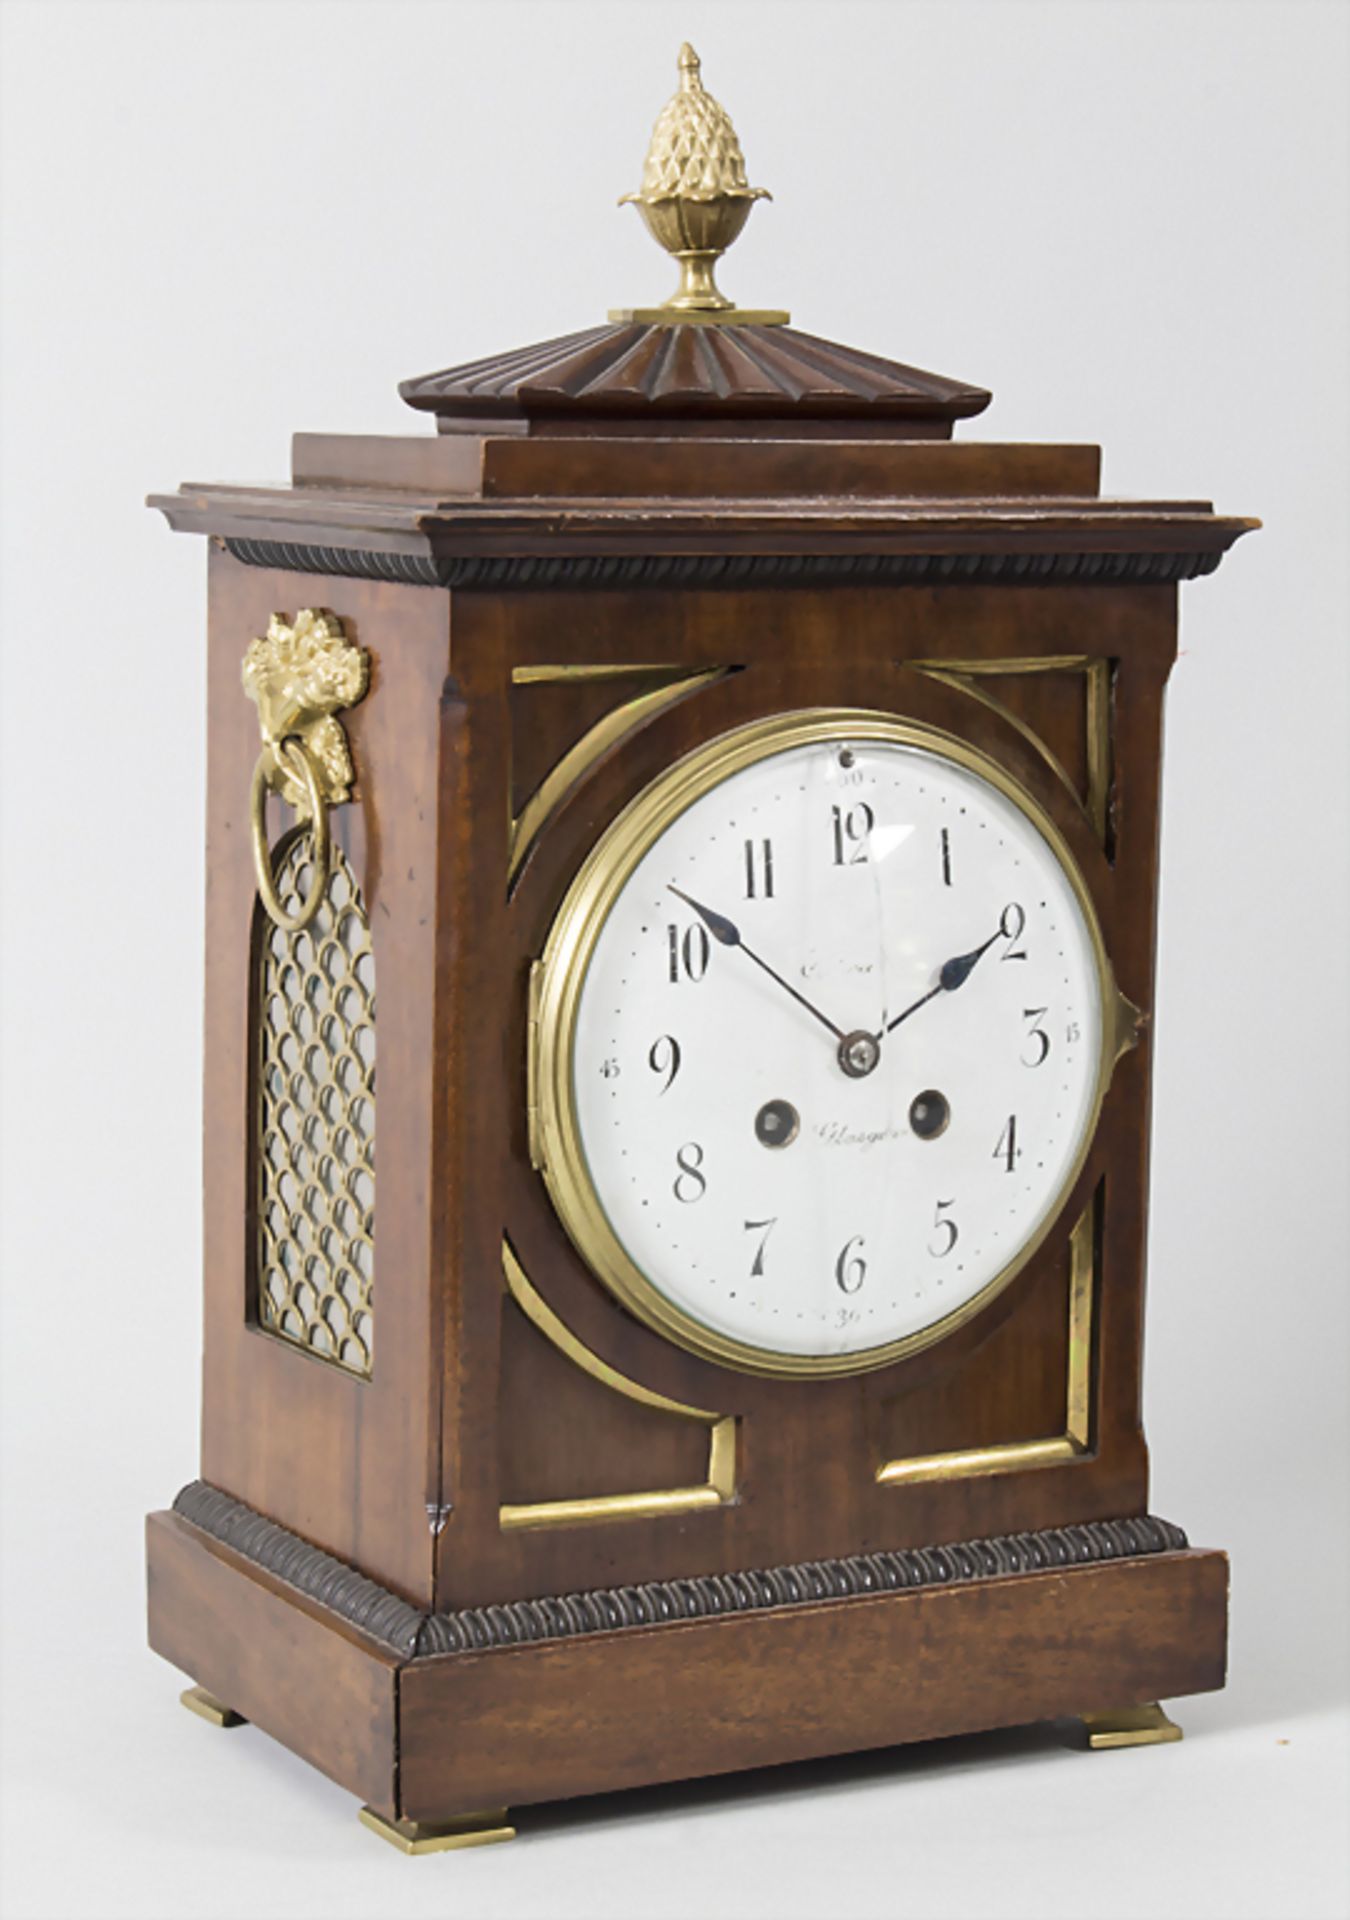 Tischuhr / A clock, WB & Fils, Paris, um 1880Gehäuse: Nussbaum mit seitlichen vergitt